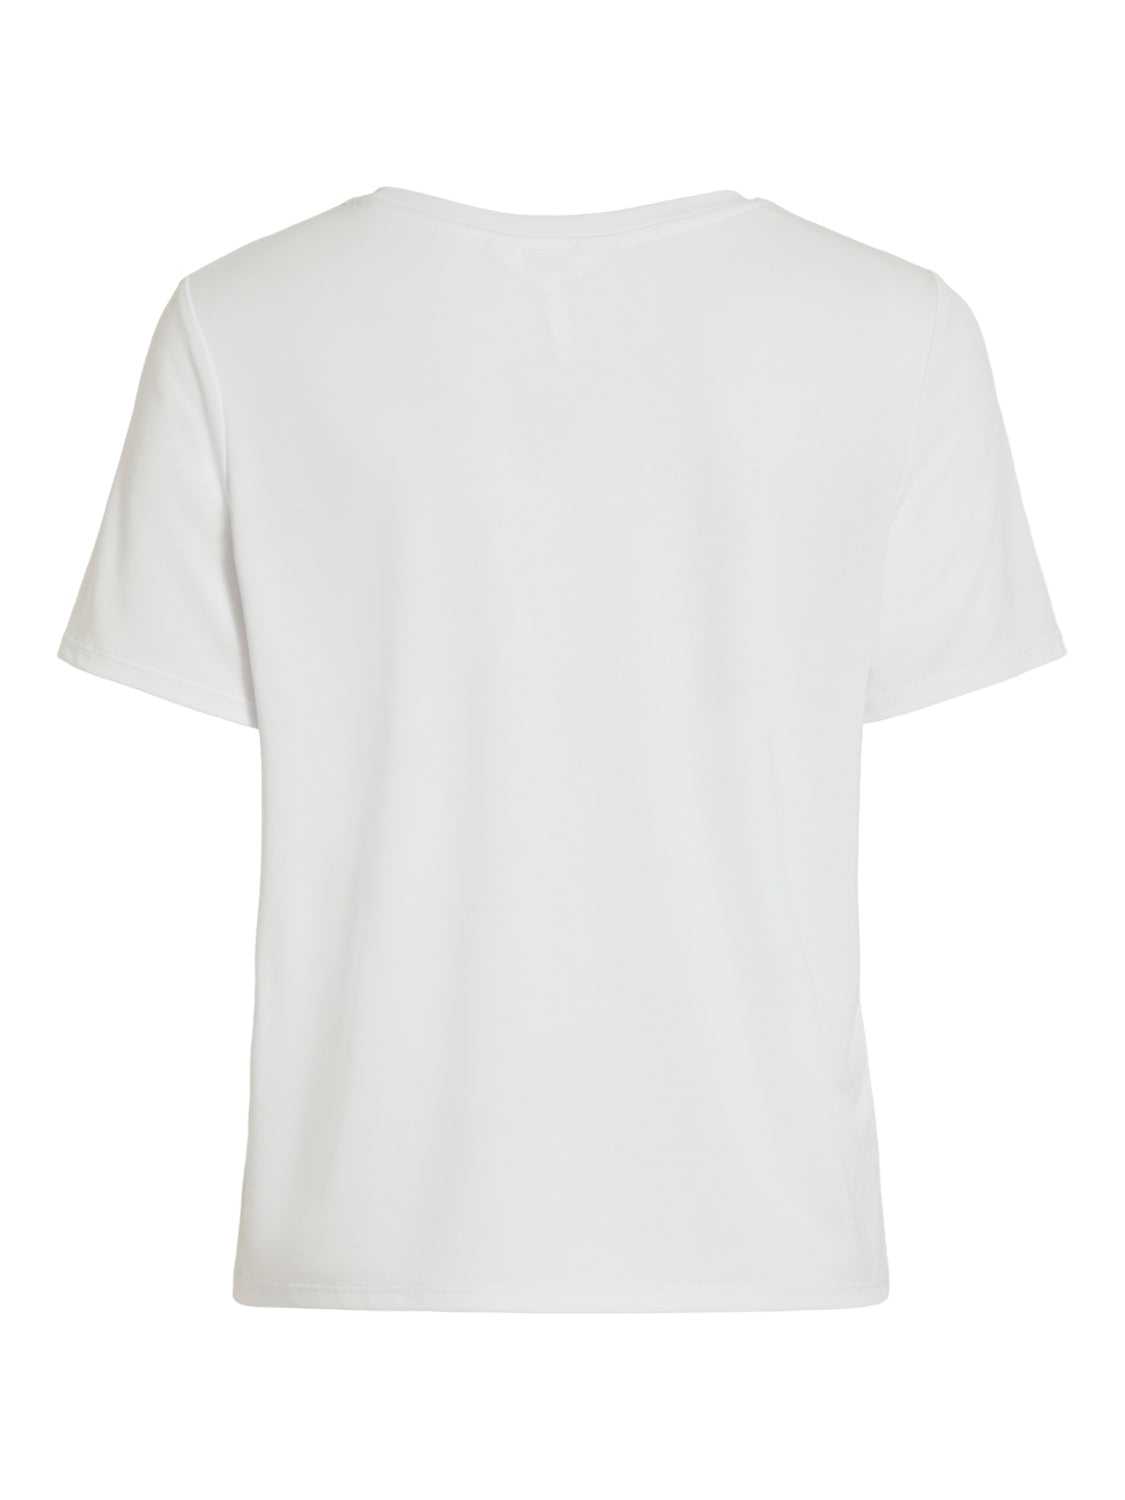 OBJANNIE T-Shirt - white